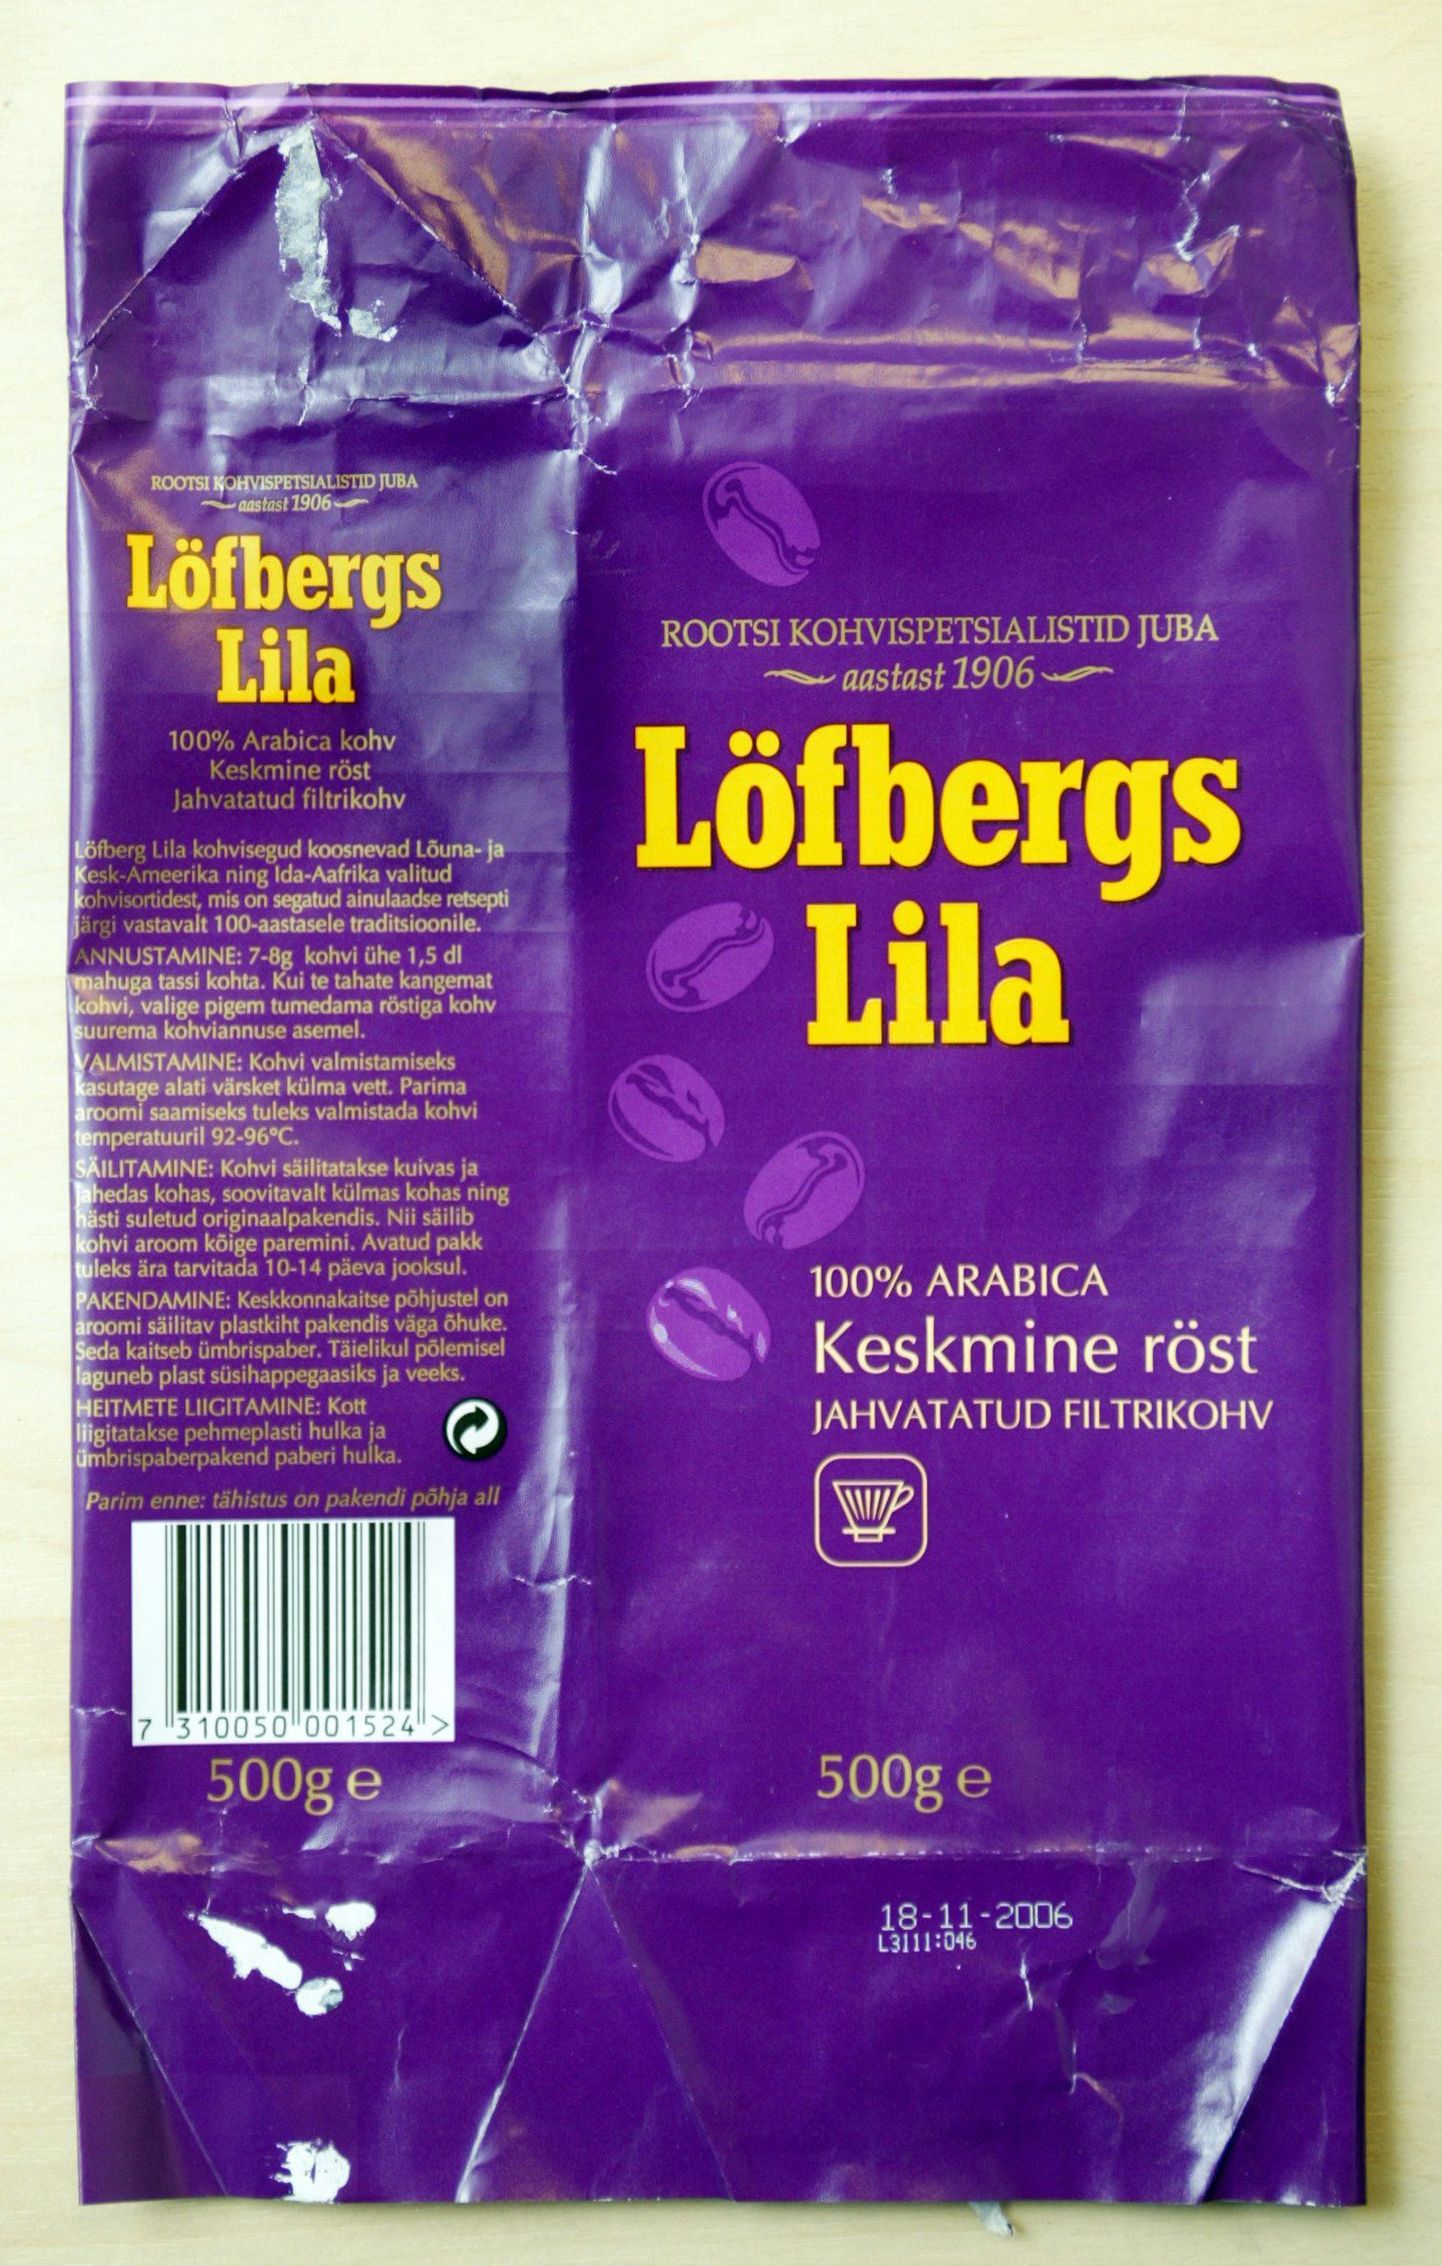 Pildil Löfbergs Lila kohvi pakend.